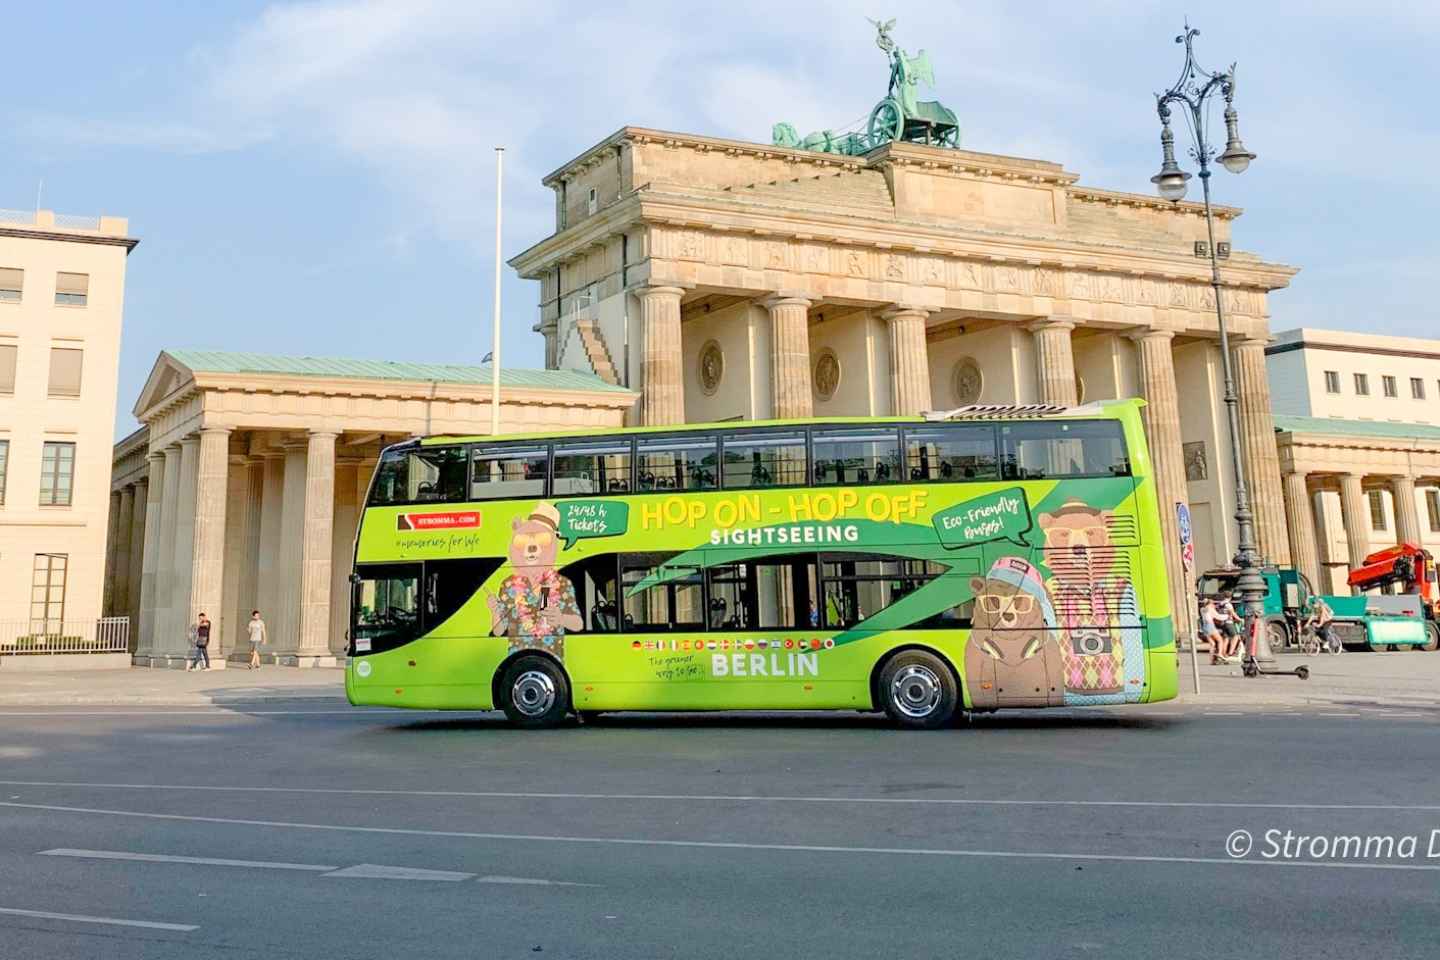 Berlijn: hop on, hop off-sightseeingbus met bootopties